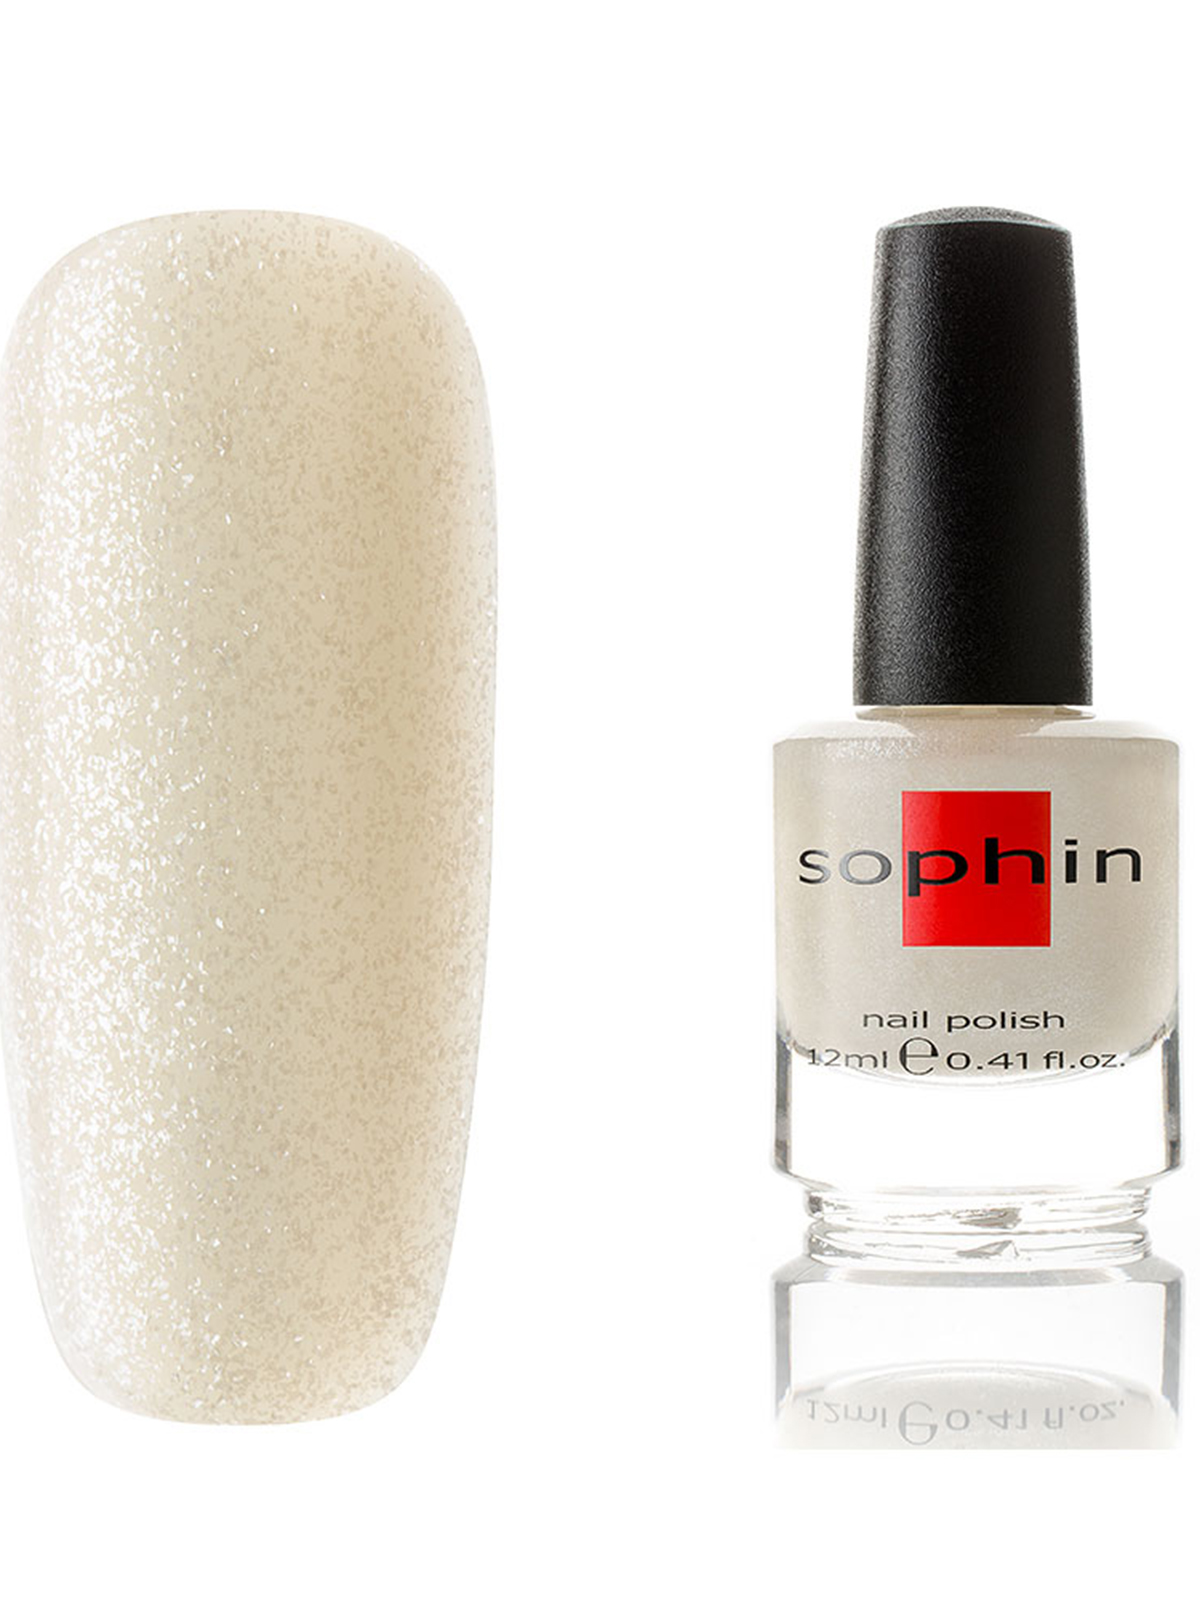 Софин (sophin) - лак для ногтей, отзывы и палитра